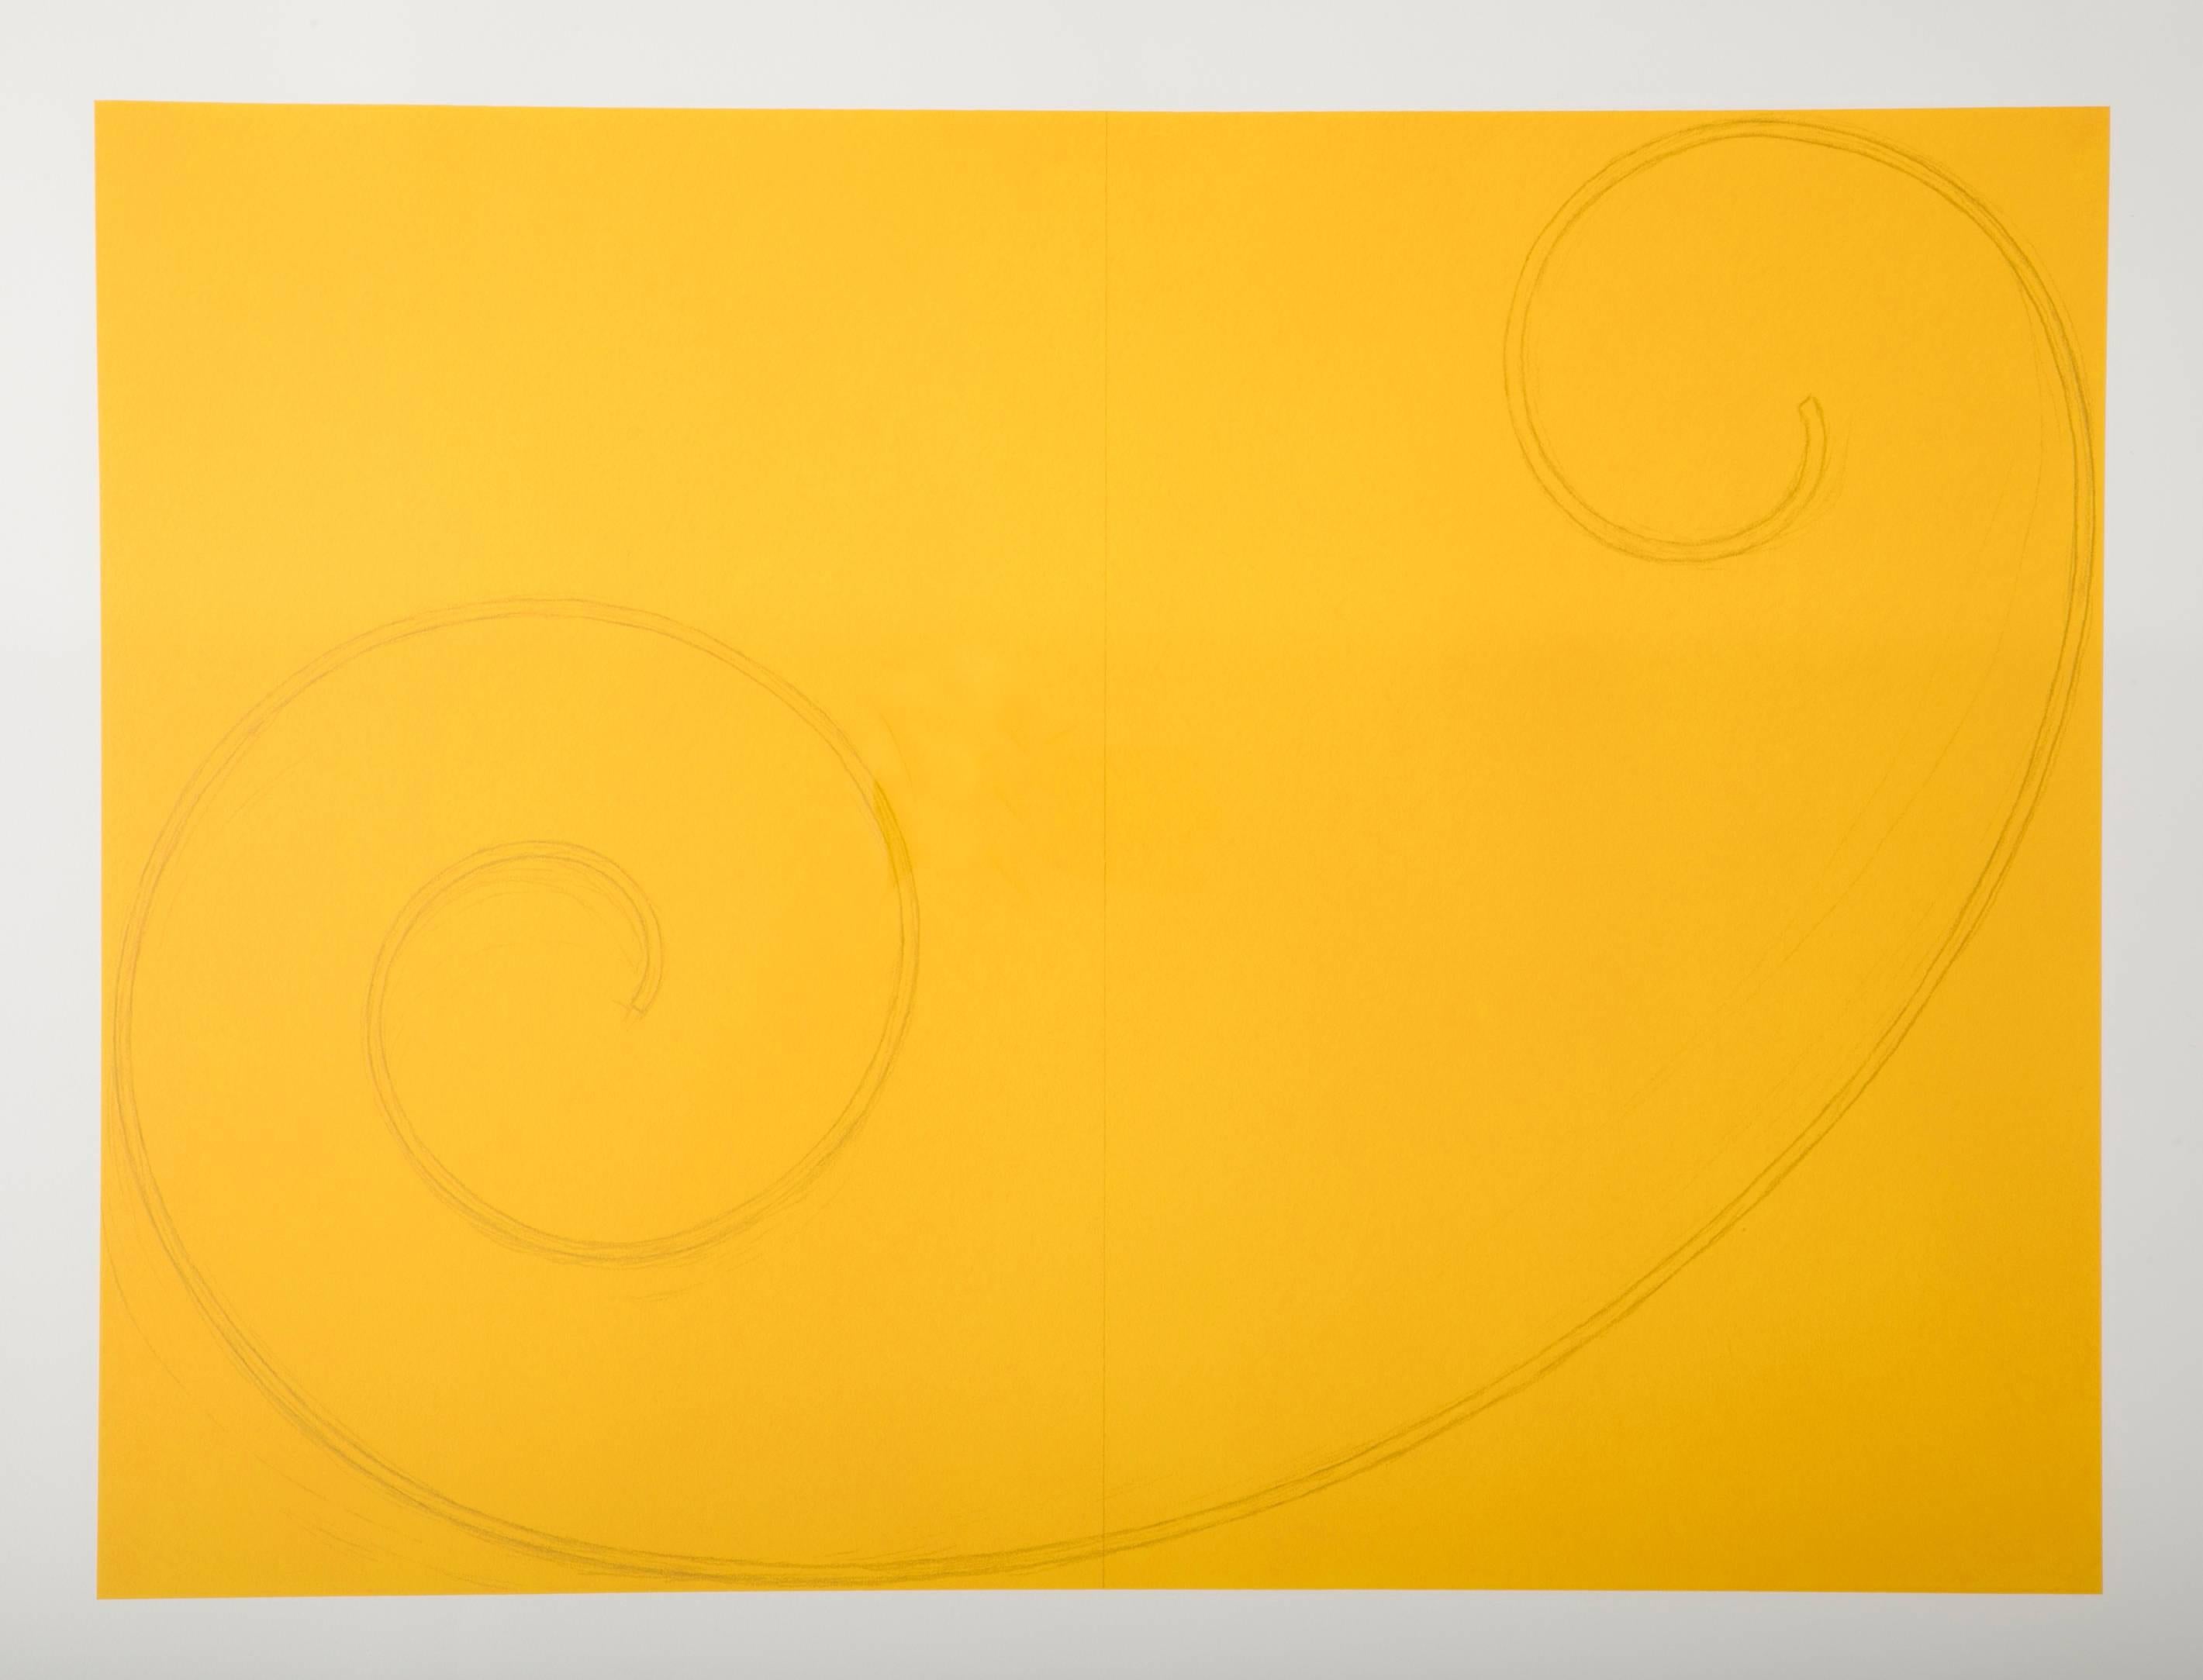 Gelbe gelockte Figur, ein Siebdruck von Robert Mangold. Herausgegeben von Pace Editions, New York, 2002. Mit Bleistift signiert und nummeriert 10/10. Volles Blatt. 29 3/8